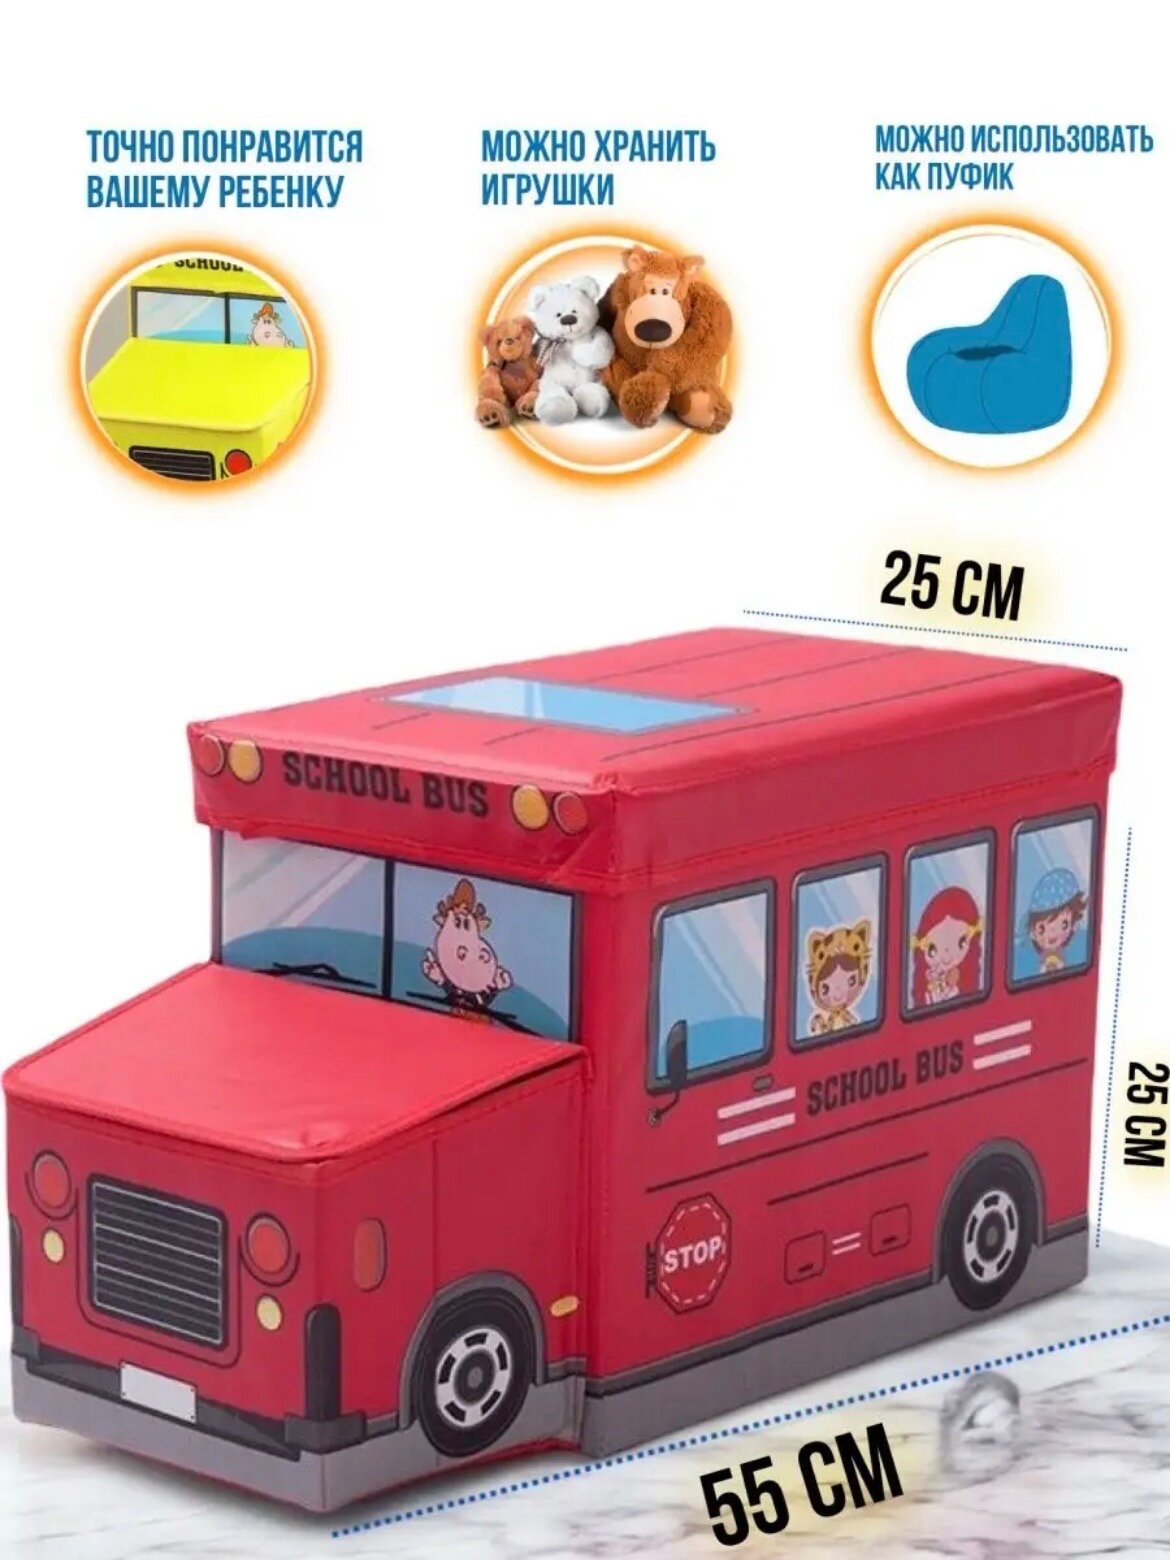 Автобус Пуф, корзина для хранения игрушек, вещей и книг